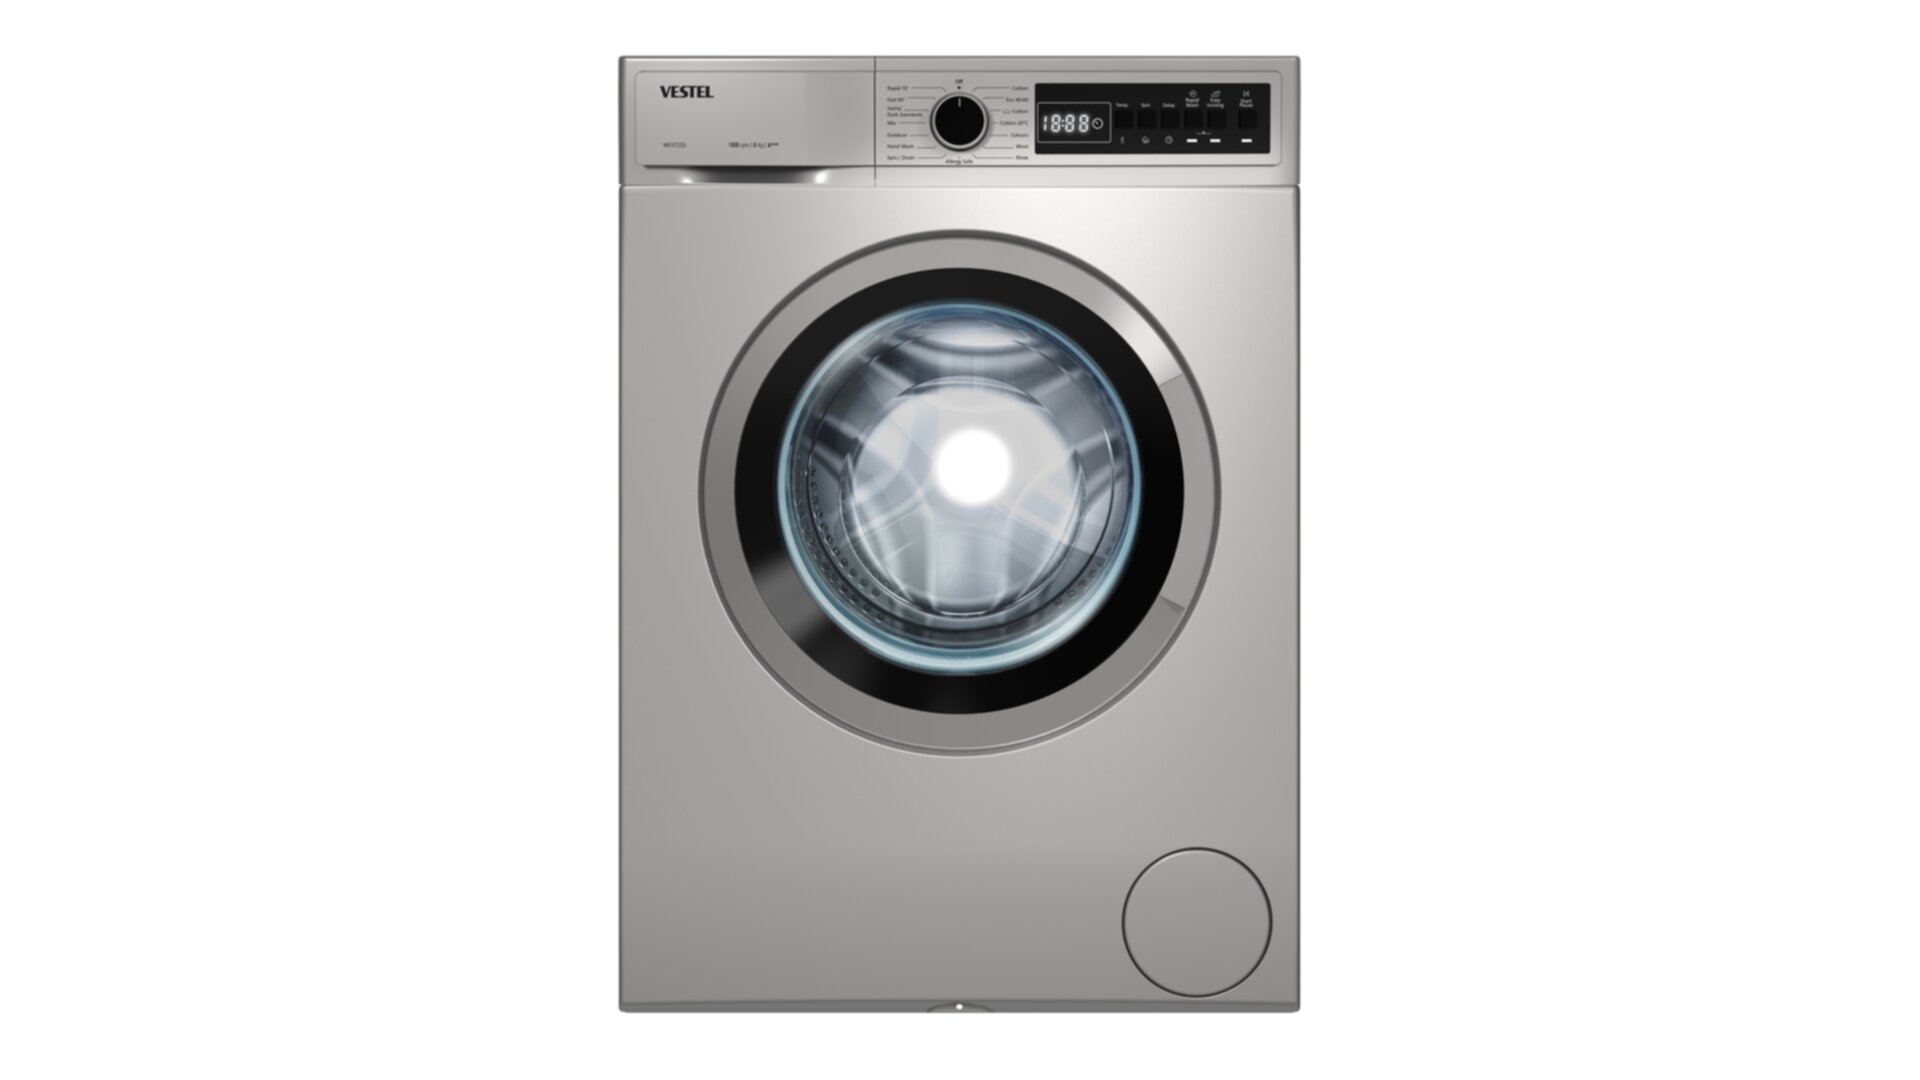 Washing MachineW810T2DS